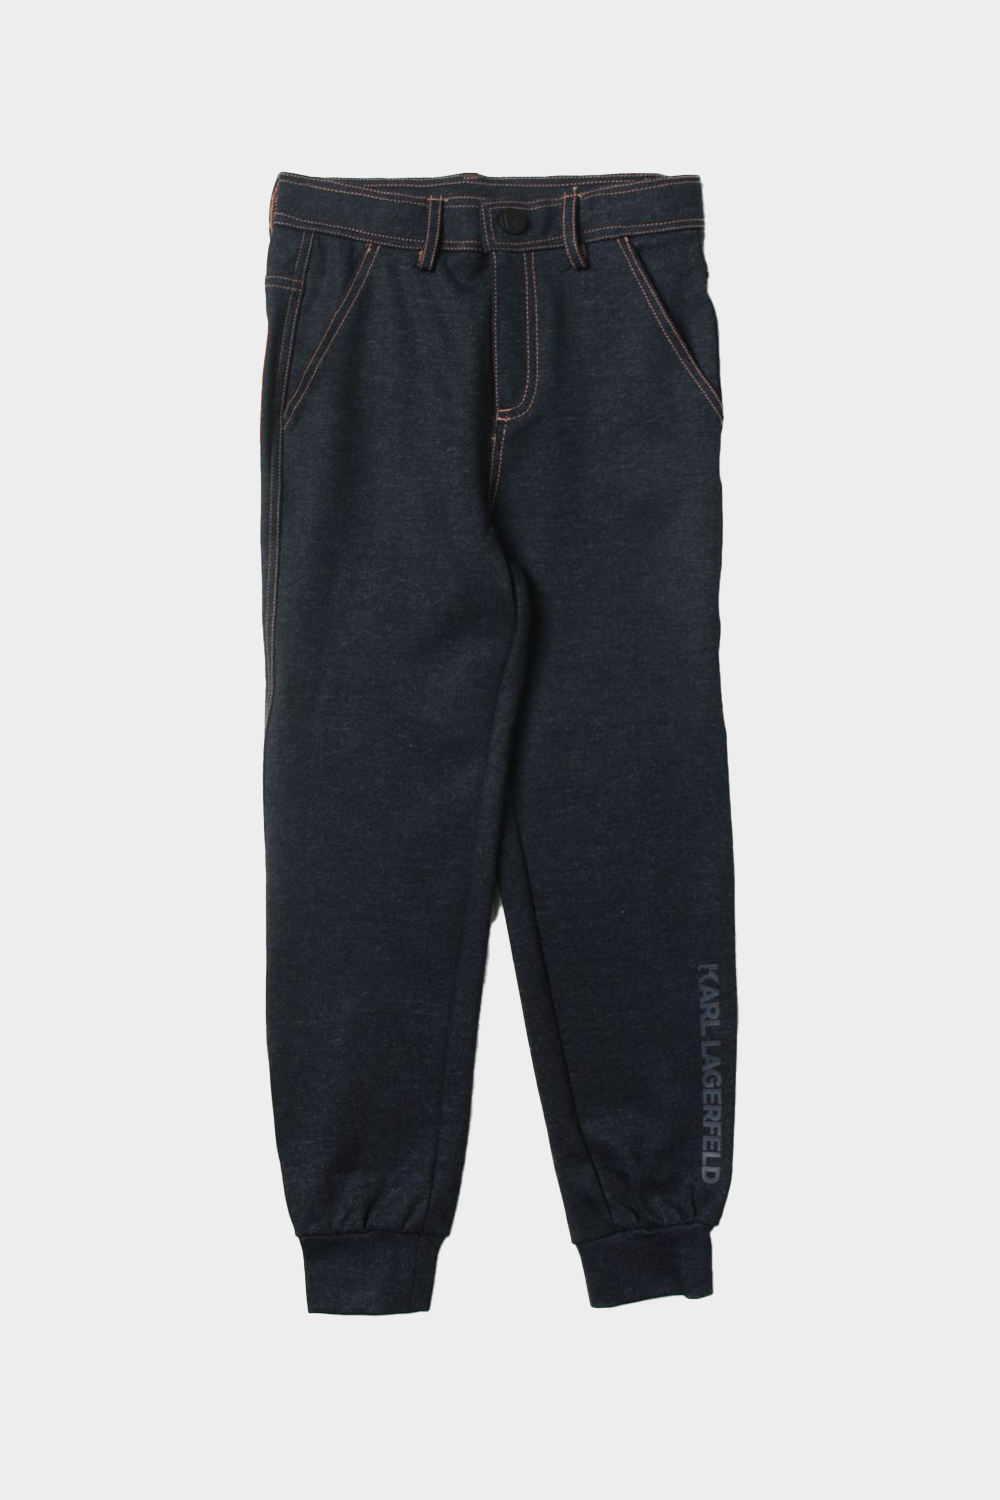 מכנסי טרנינג לילדים בצבע שחור KARL LAGERFELD Vendome online | ונדום .